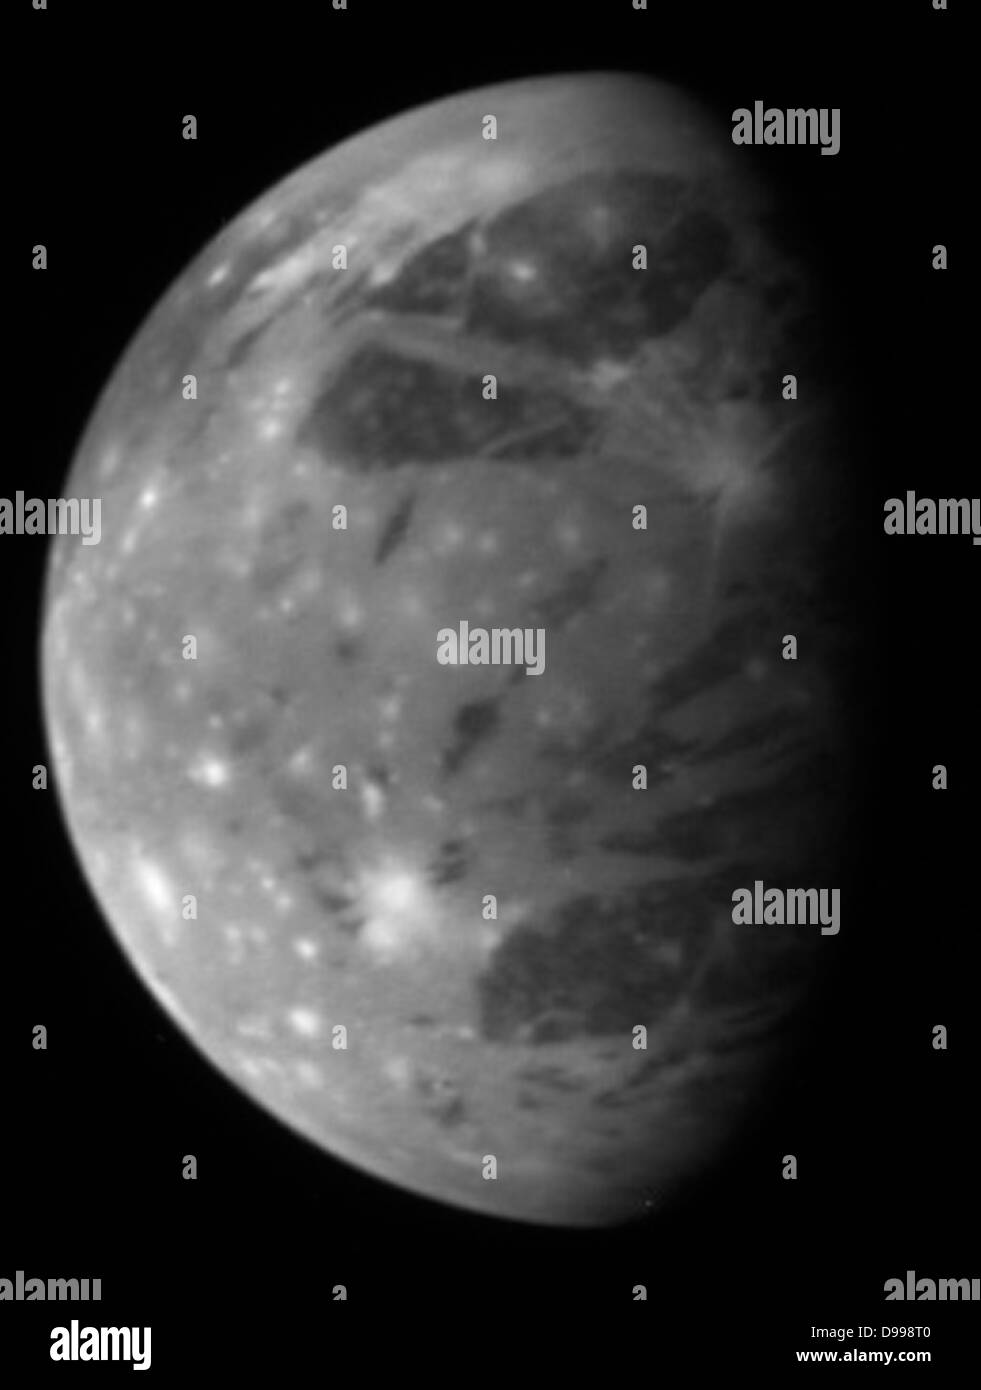 Este montaje compara Nuevos Horizontes" mejores vistas de Ganímedes, la luna más grande de Júpiter. LORRI. Foto de stock